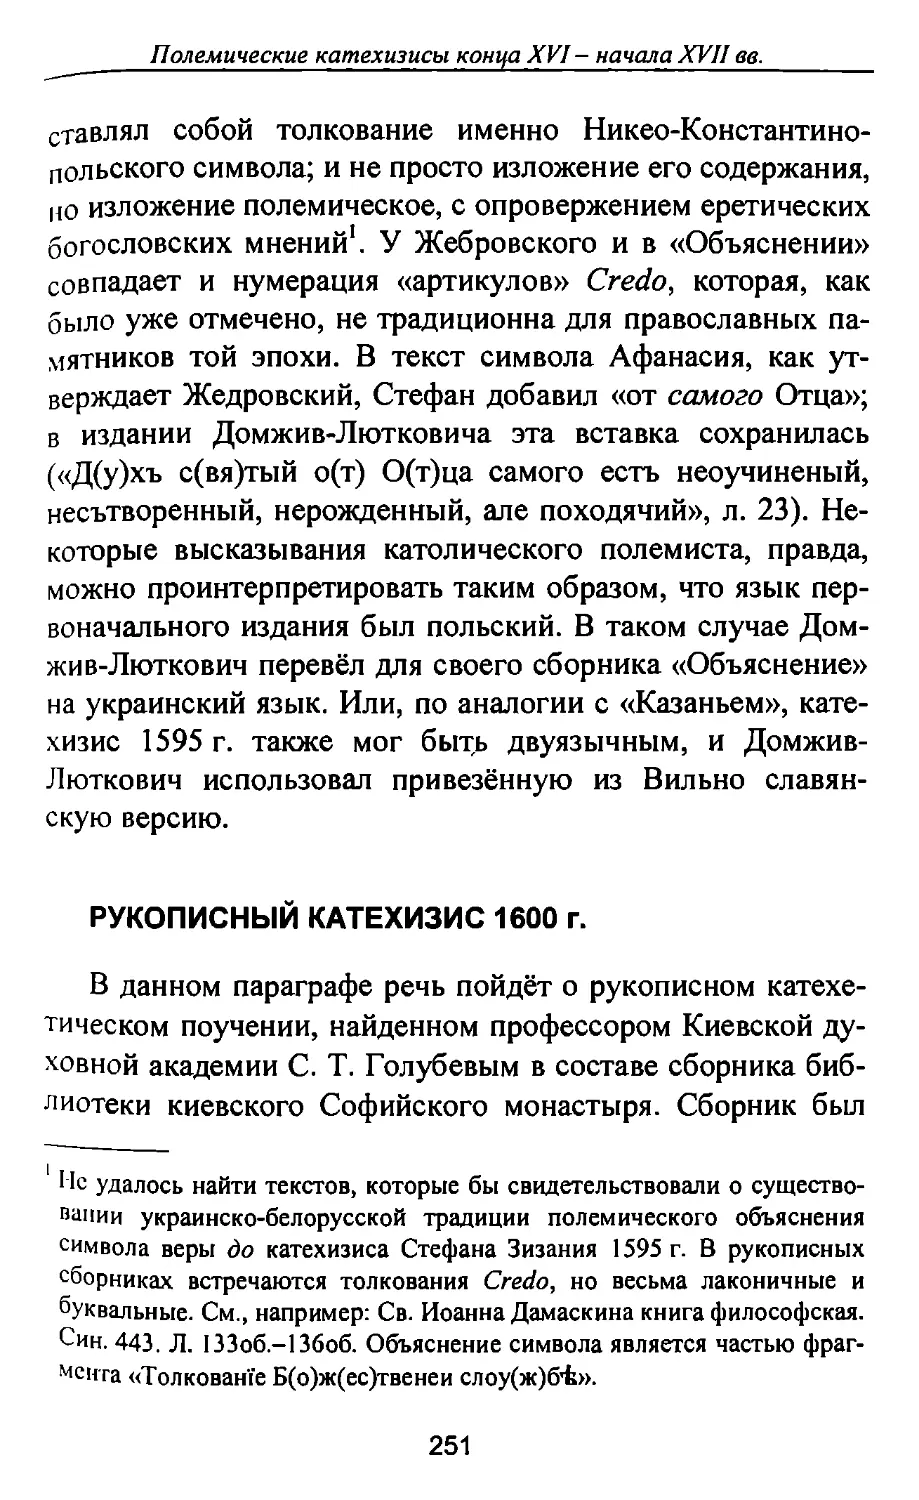 Рукописный катехизис 1600 г.